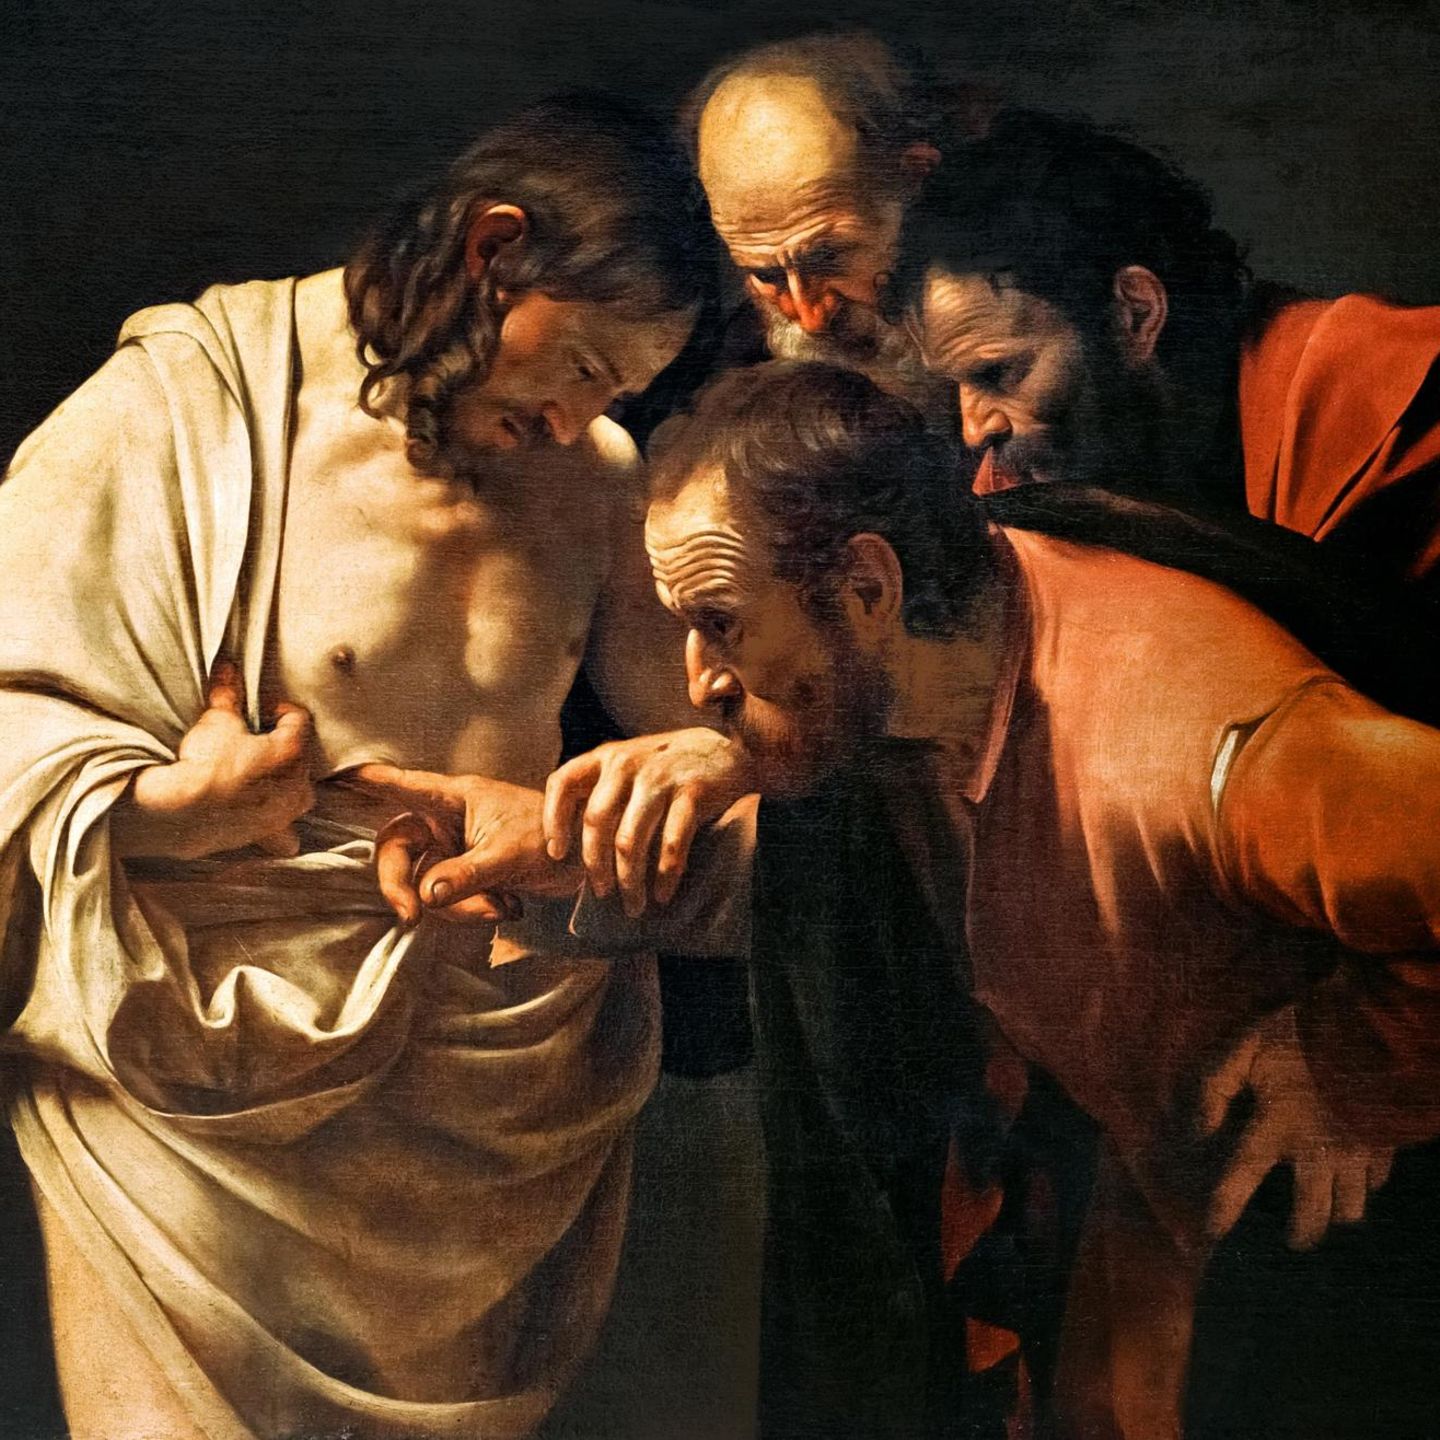 Der italienische Barockkünstler Caravaggio, von dem alle Abbildungen in diesem Beitrag stammen, malt zahlreiche Szenen aus Jesu Leben und Tod. In diesem Gemälde zeigt er die Skepsis eines Jüngers, der die Wunden des angeblich Auf­erstandenen untersucht (»Der ungläubige Thomas«, um 1603)